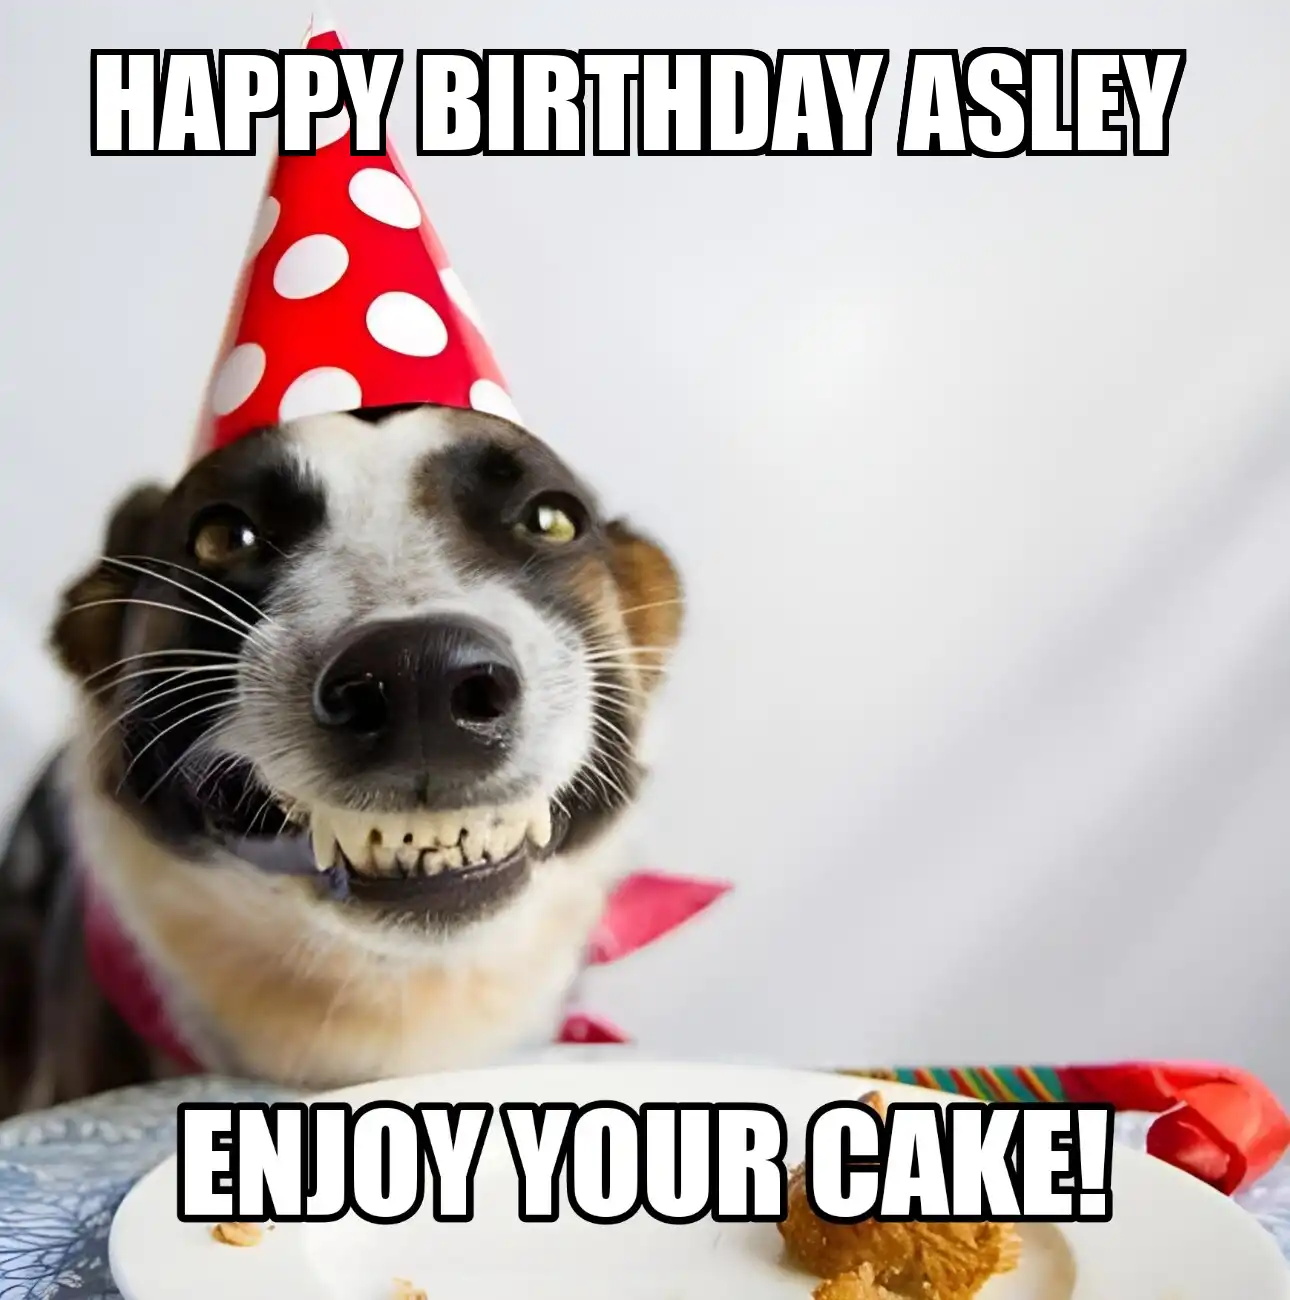 Happy Birthday Asley Enjoy Your Cake Dog Meme